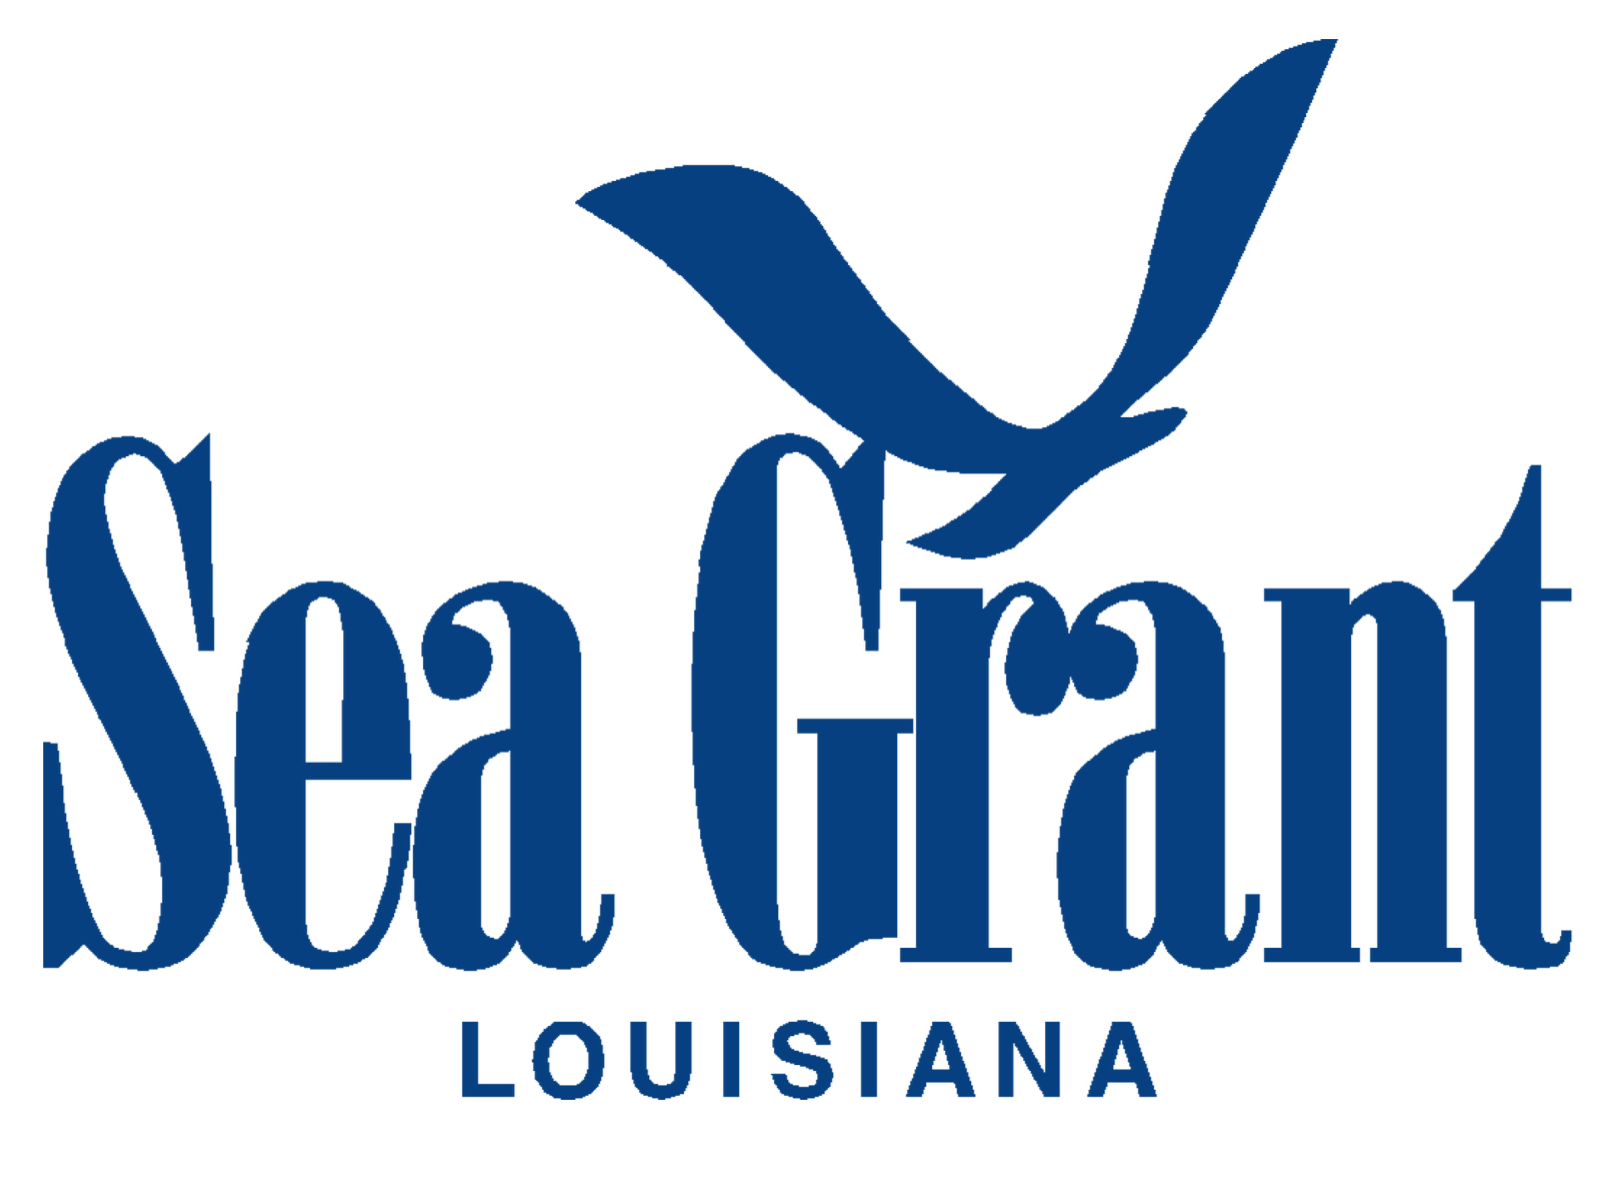 Louisiana SeaGrant